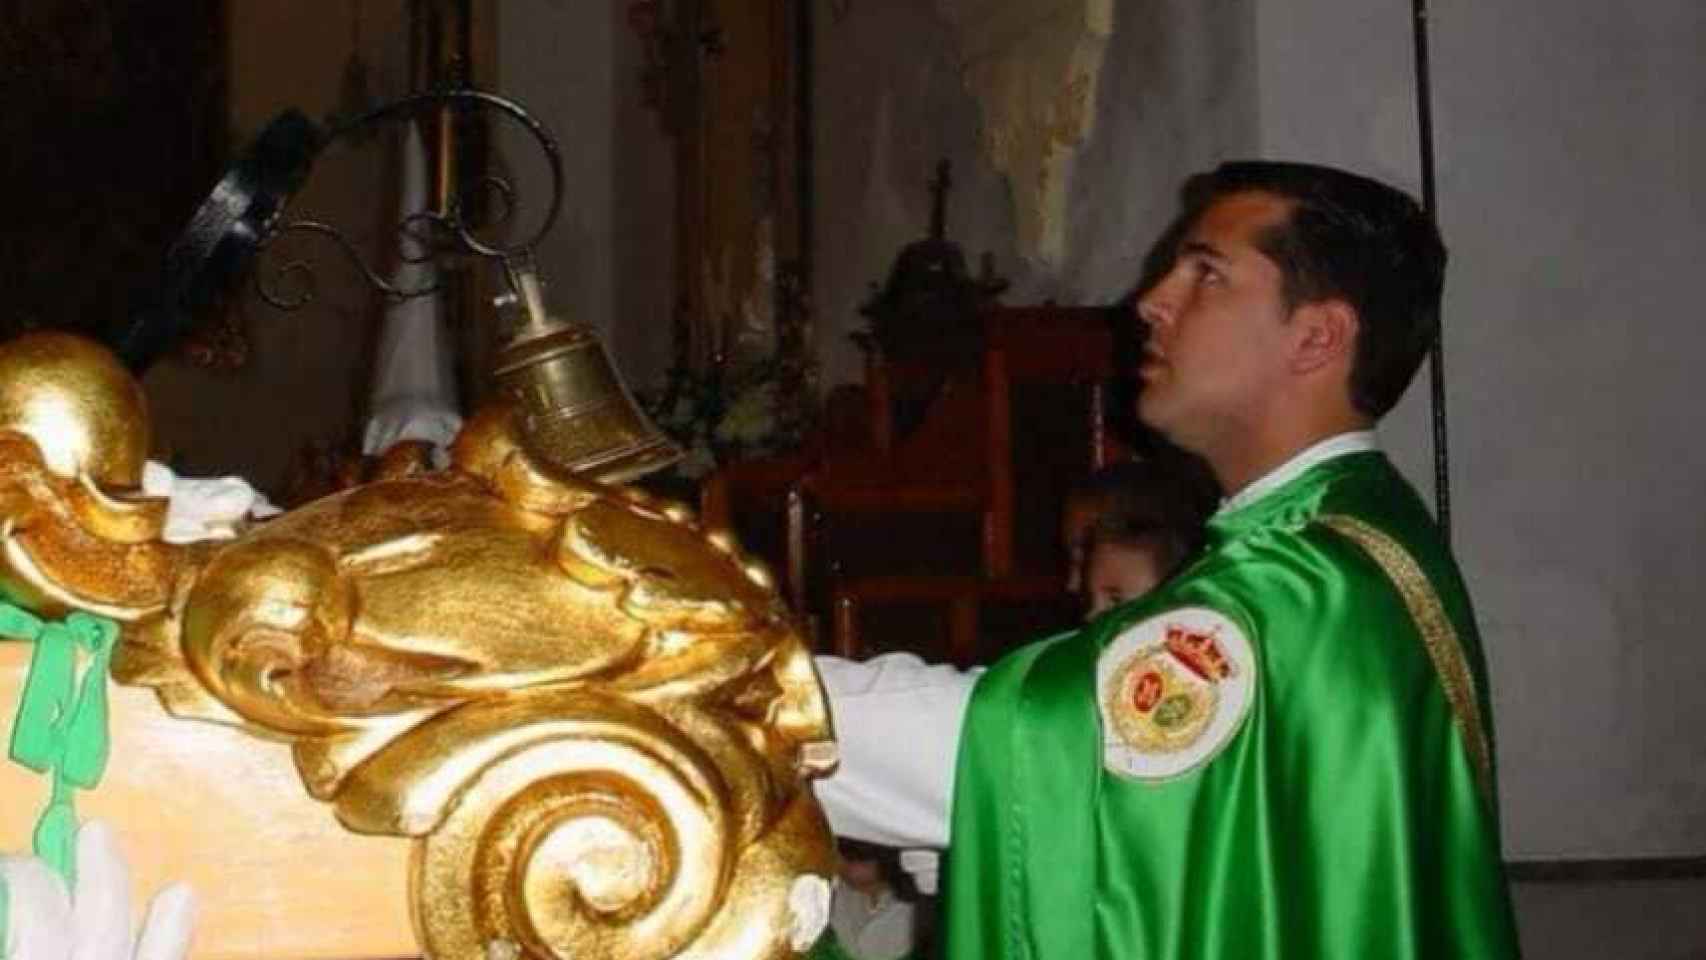 La confesión de Luis, el 'nazareno' de Campillos que deseó el asesinato de Sánchez: Pido disculpas